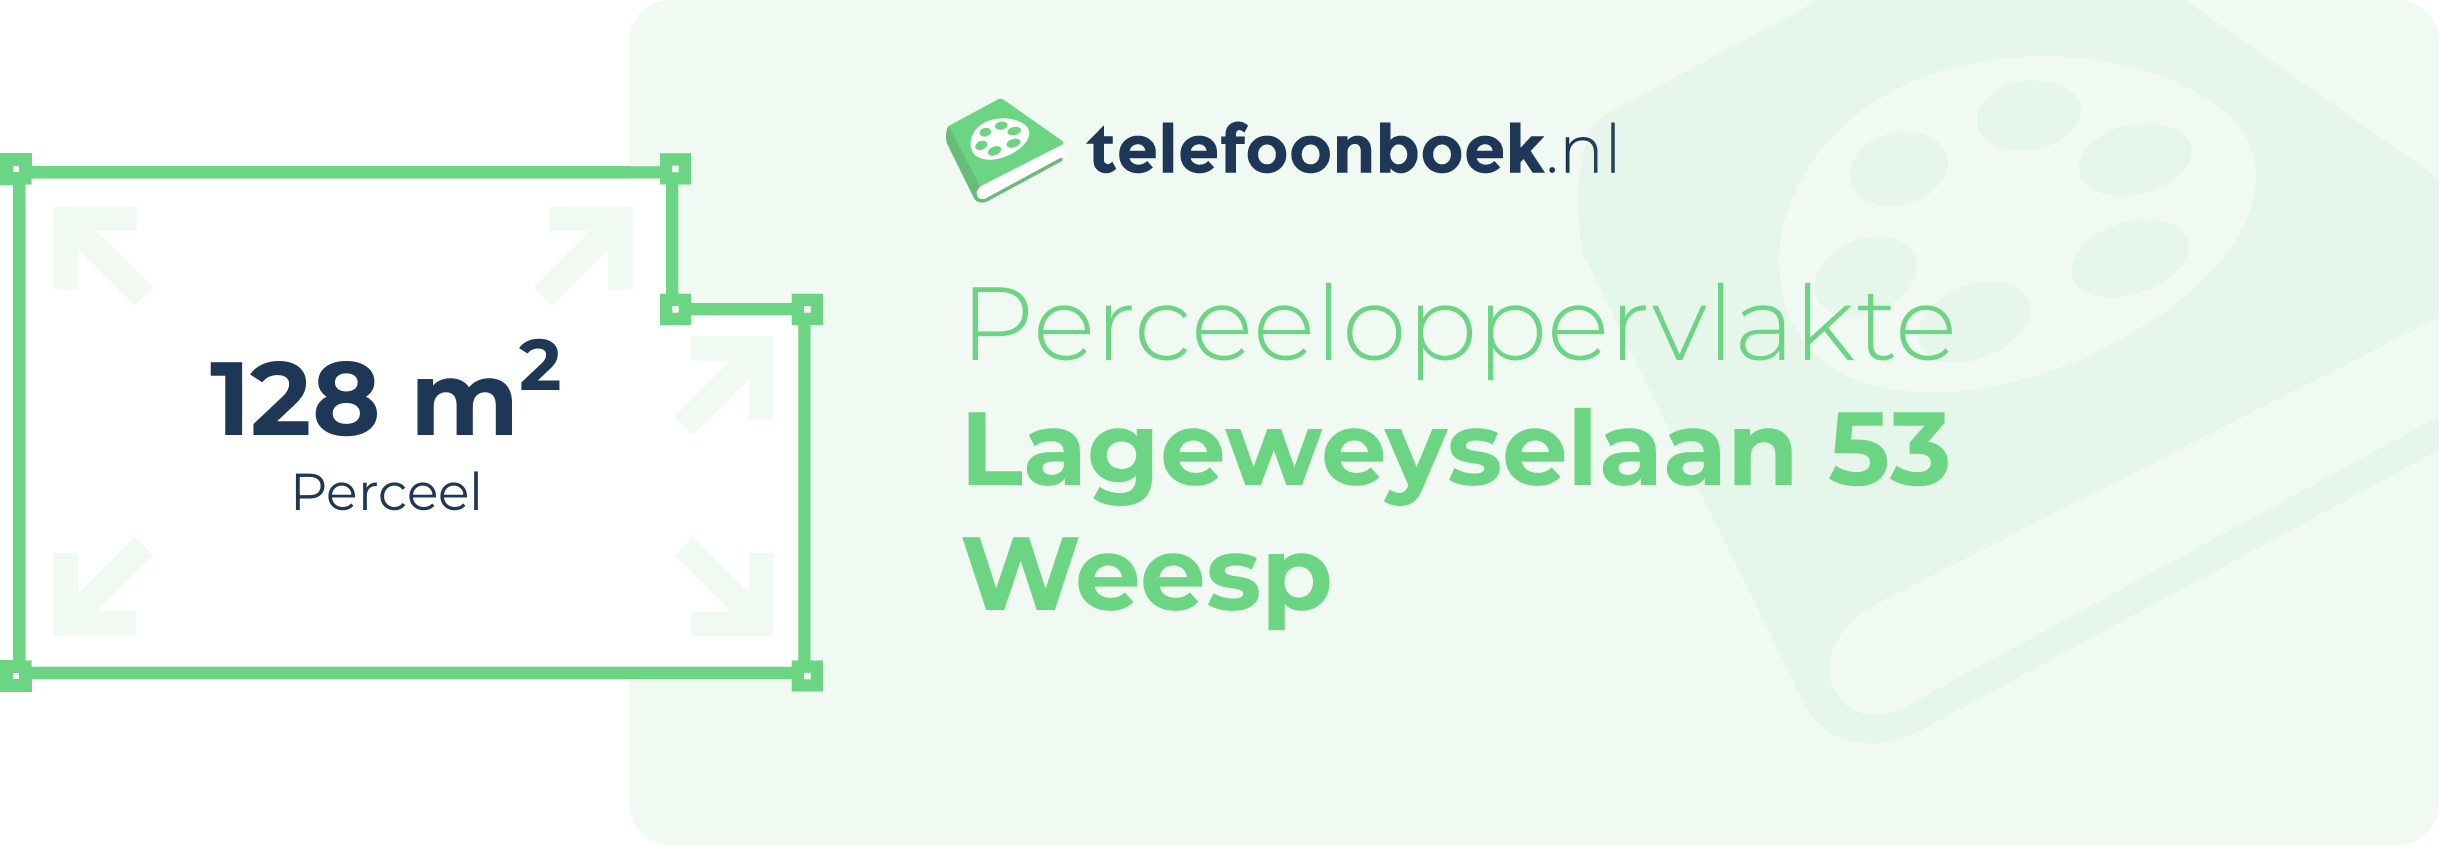 Perceeloppervlakte Lageweyselaan 53 Weesp